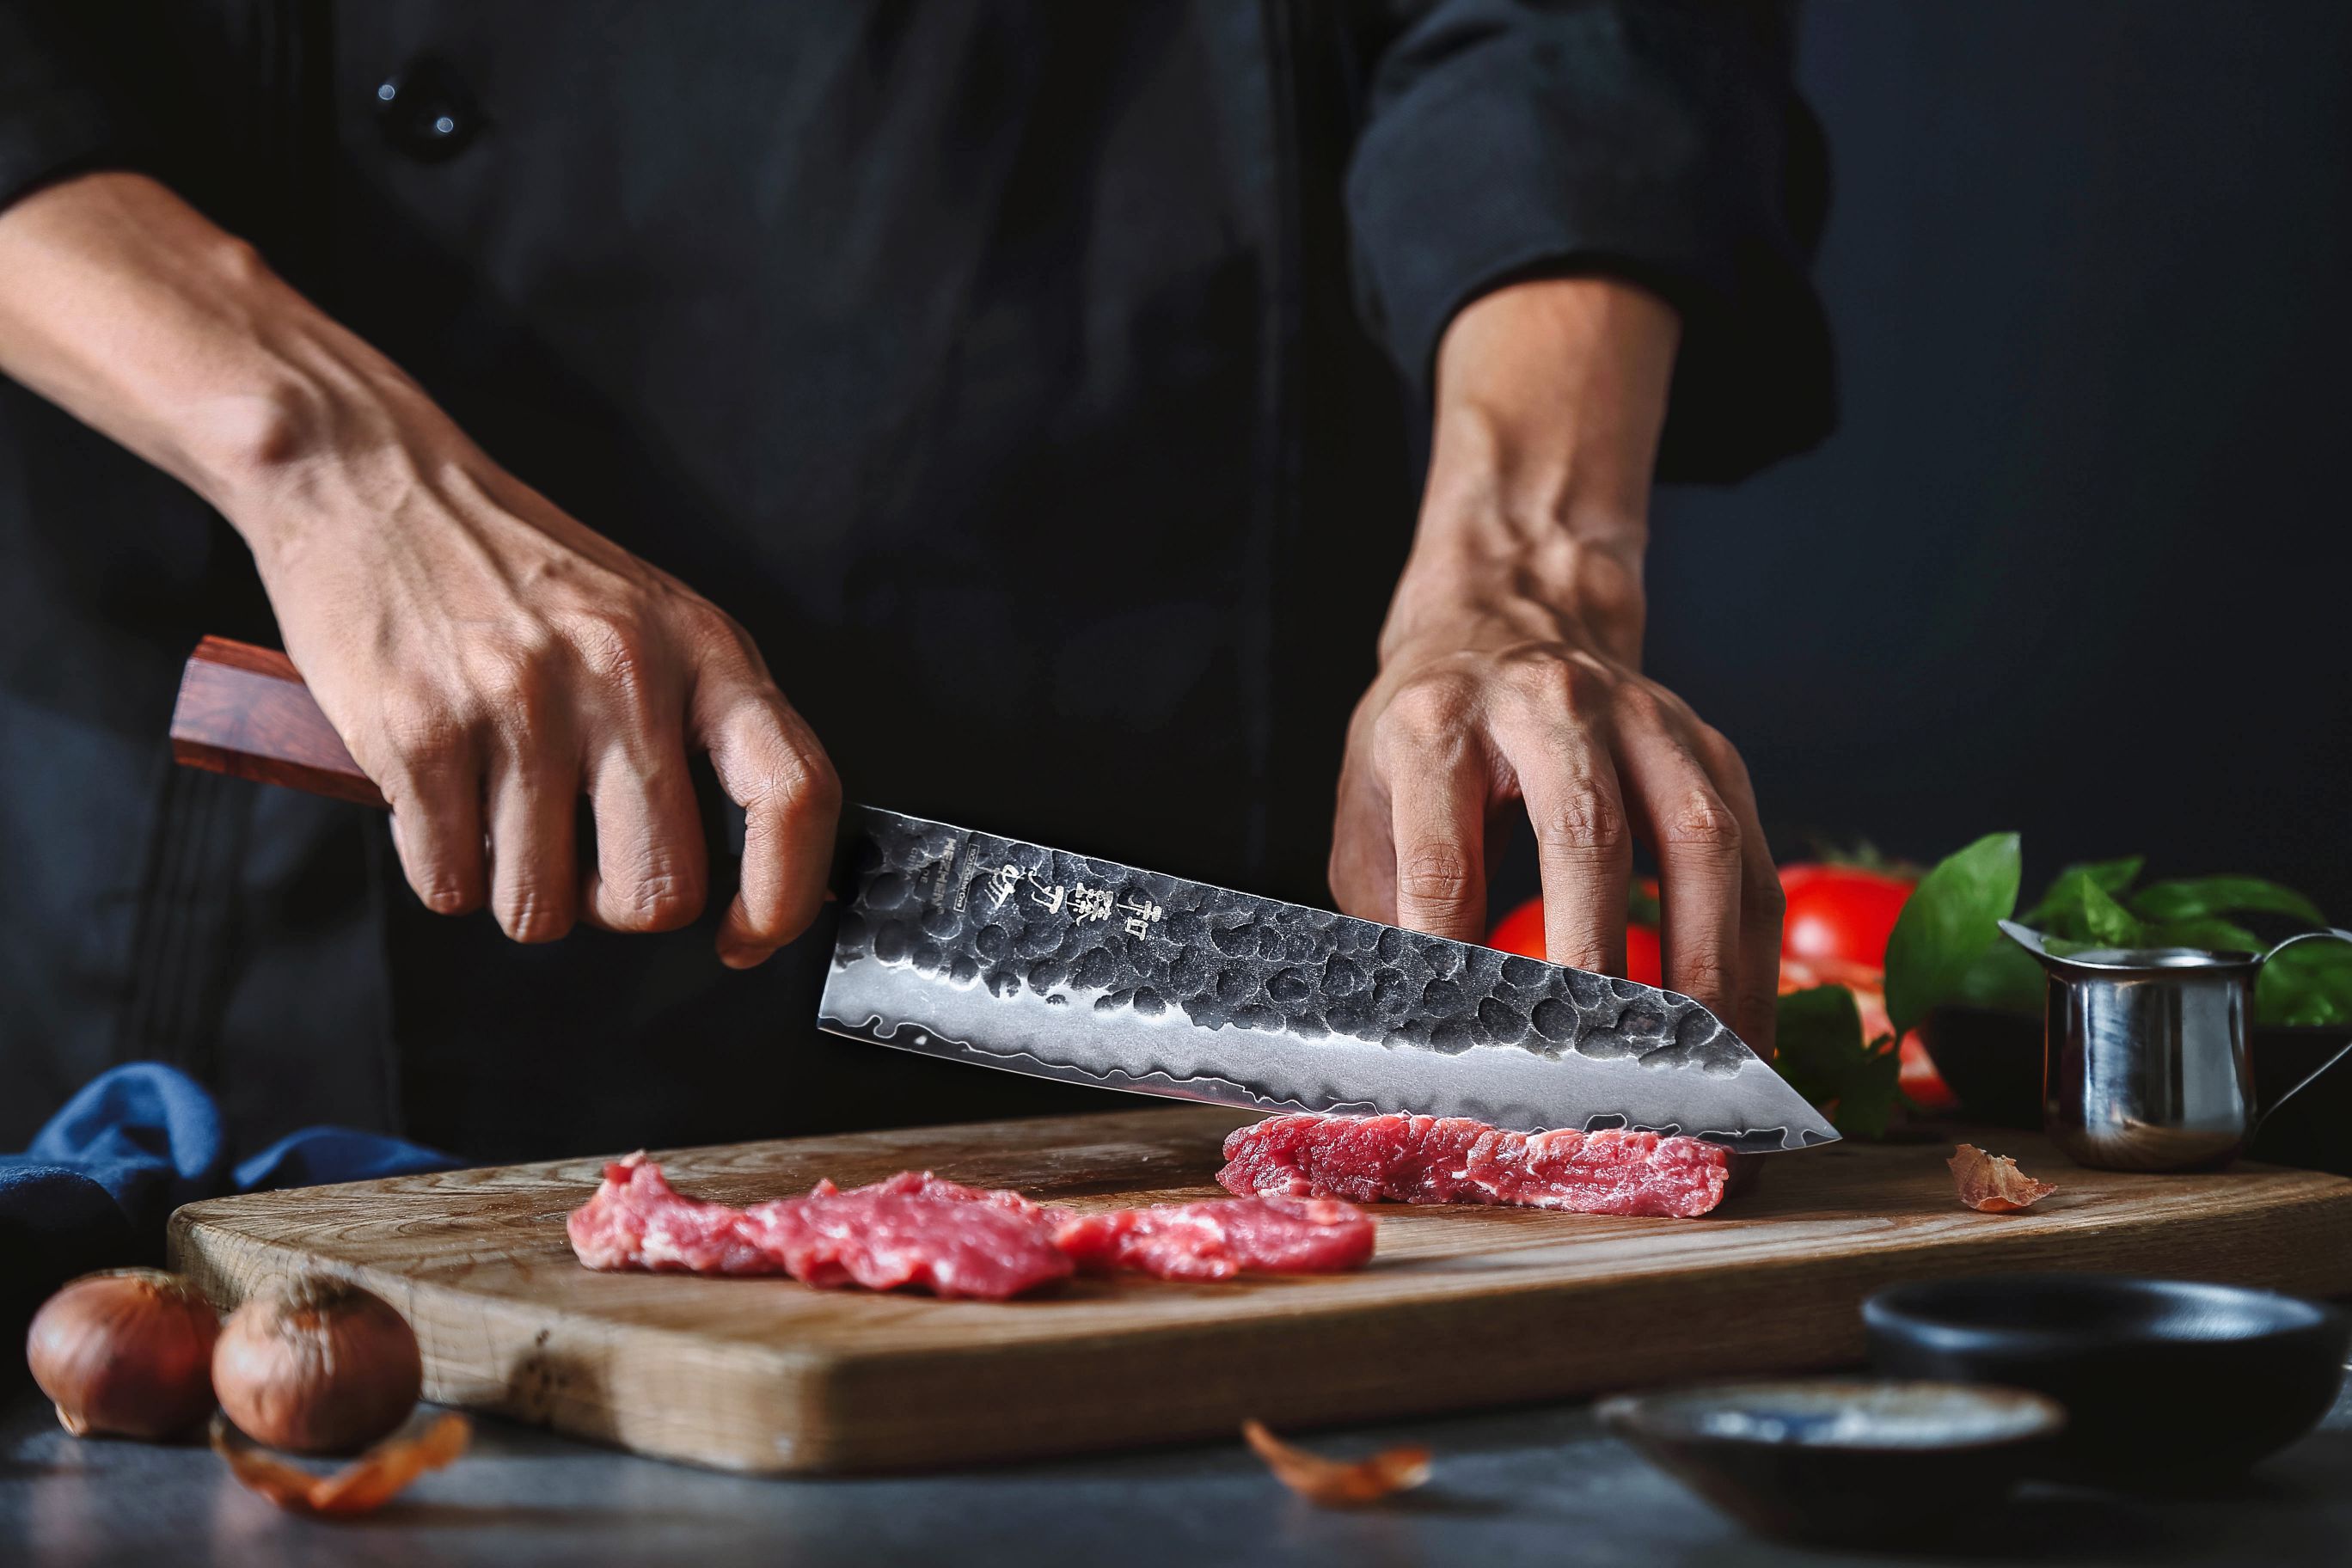 Šéfkuchařský nůž HezHen PM8S 8,5" - ukázka krájení s nožem